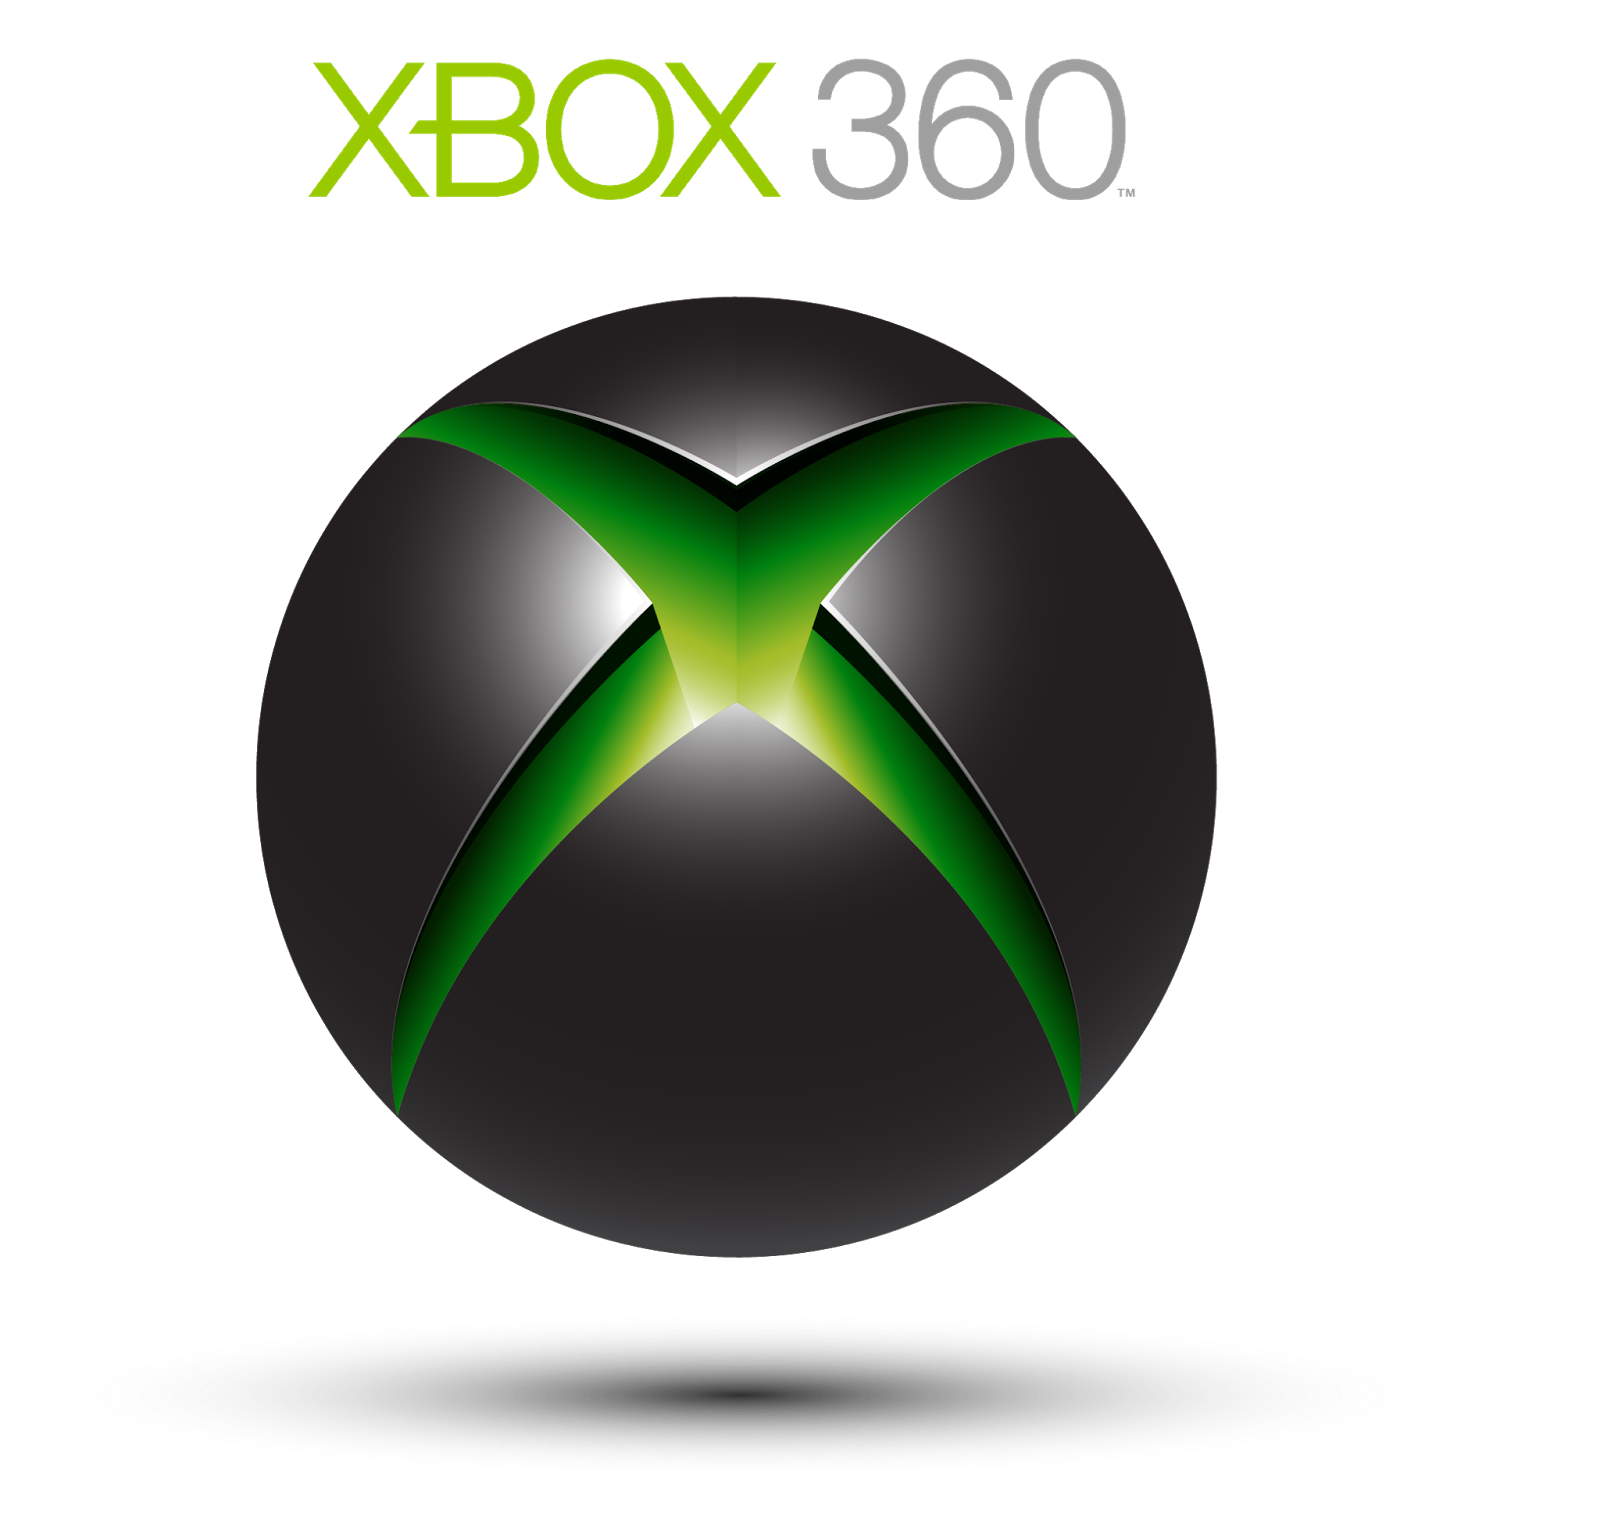 Аватарки xbox. Xbox 360. Xbox 360 лого. Microsoft Xbox 360 logo. Икс бокс 360 значок.